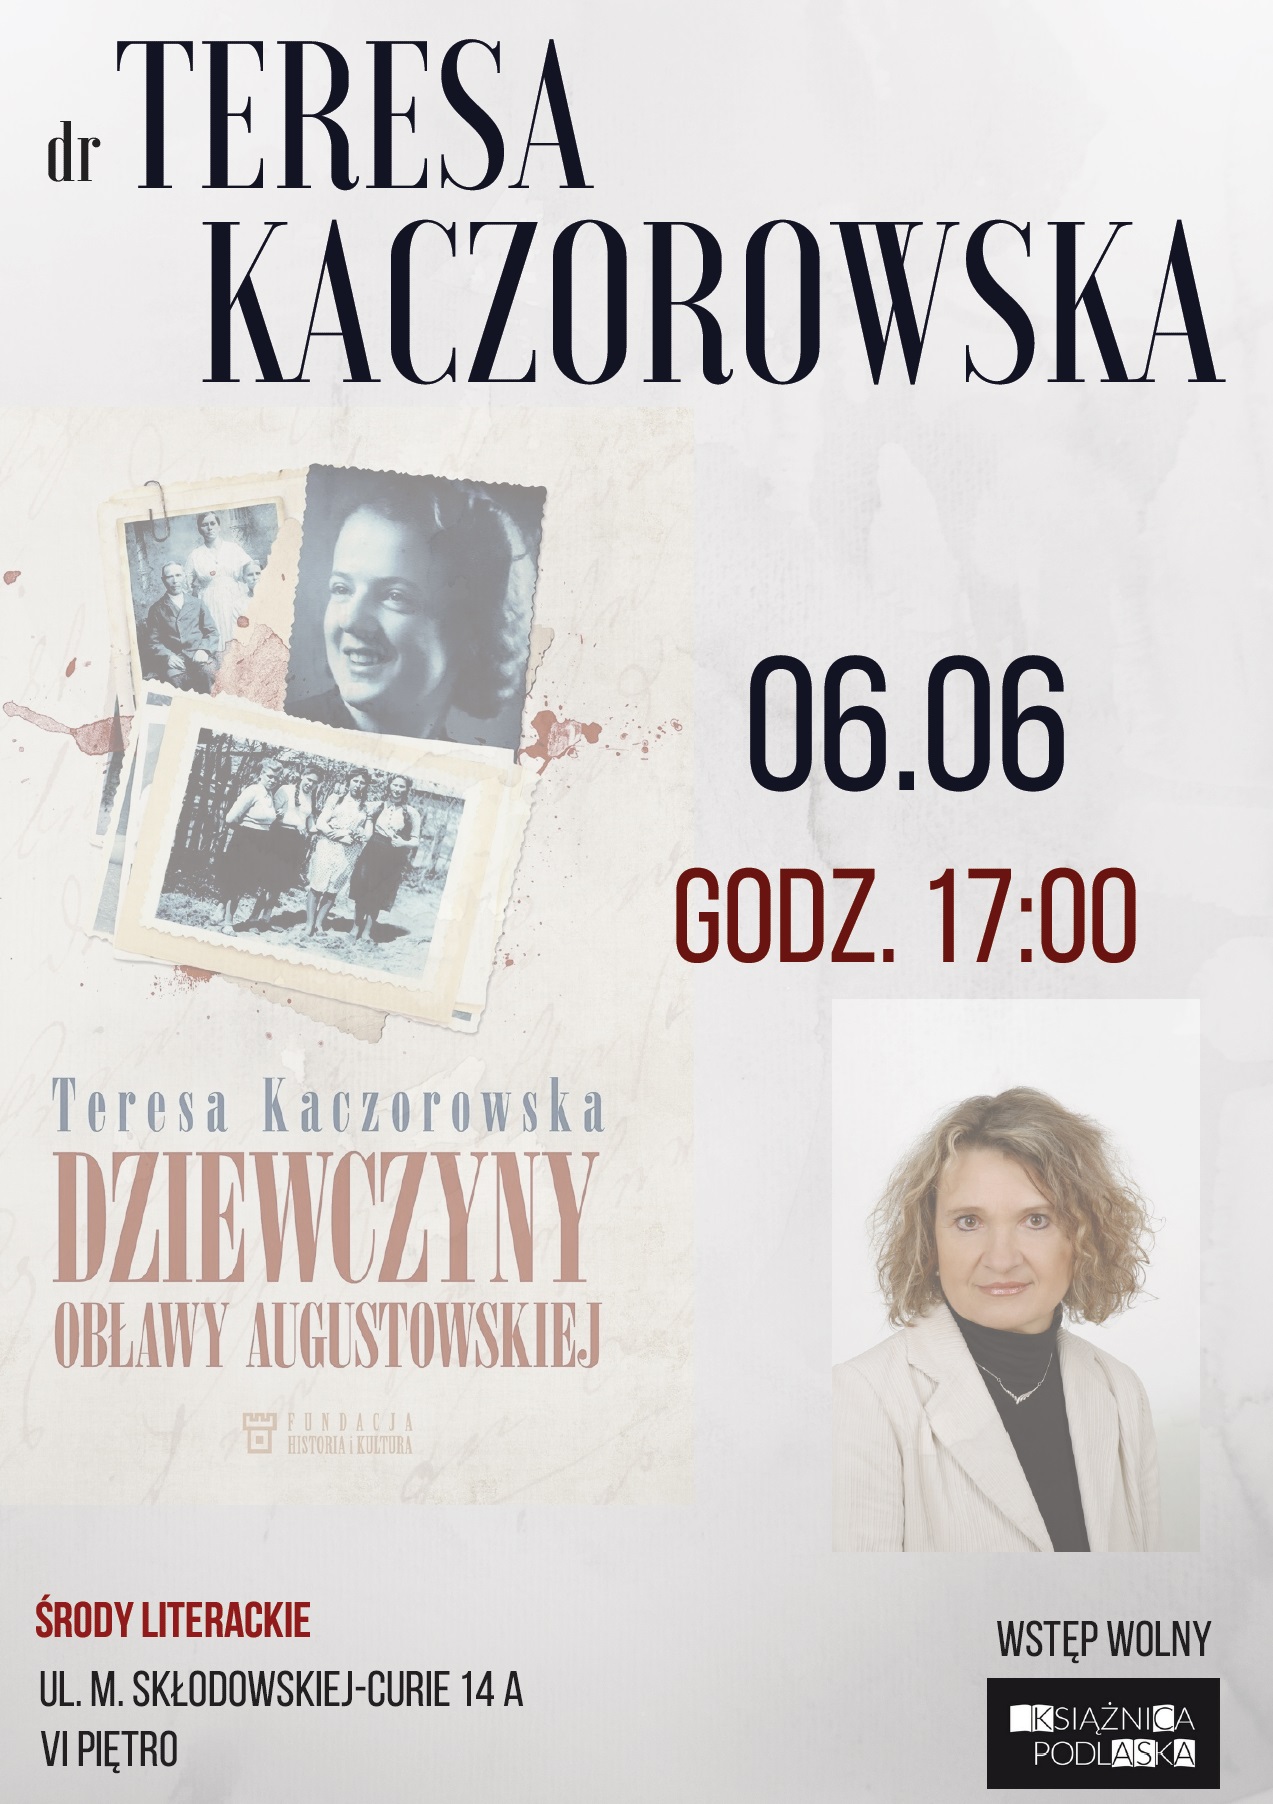 Plakat spotkania z dr Teresą Kaczorowską (źródło: materiały prasowe organizatora)